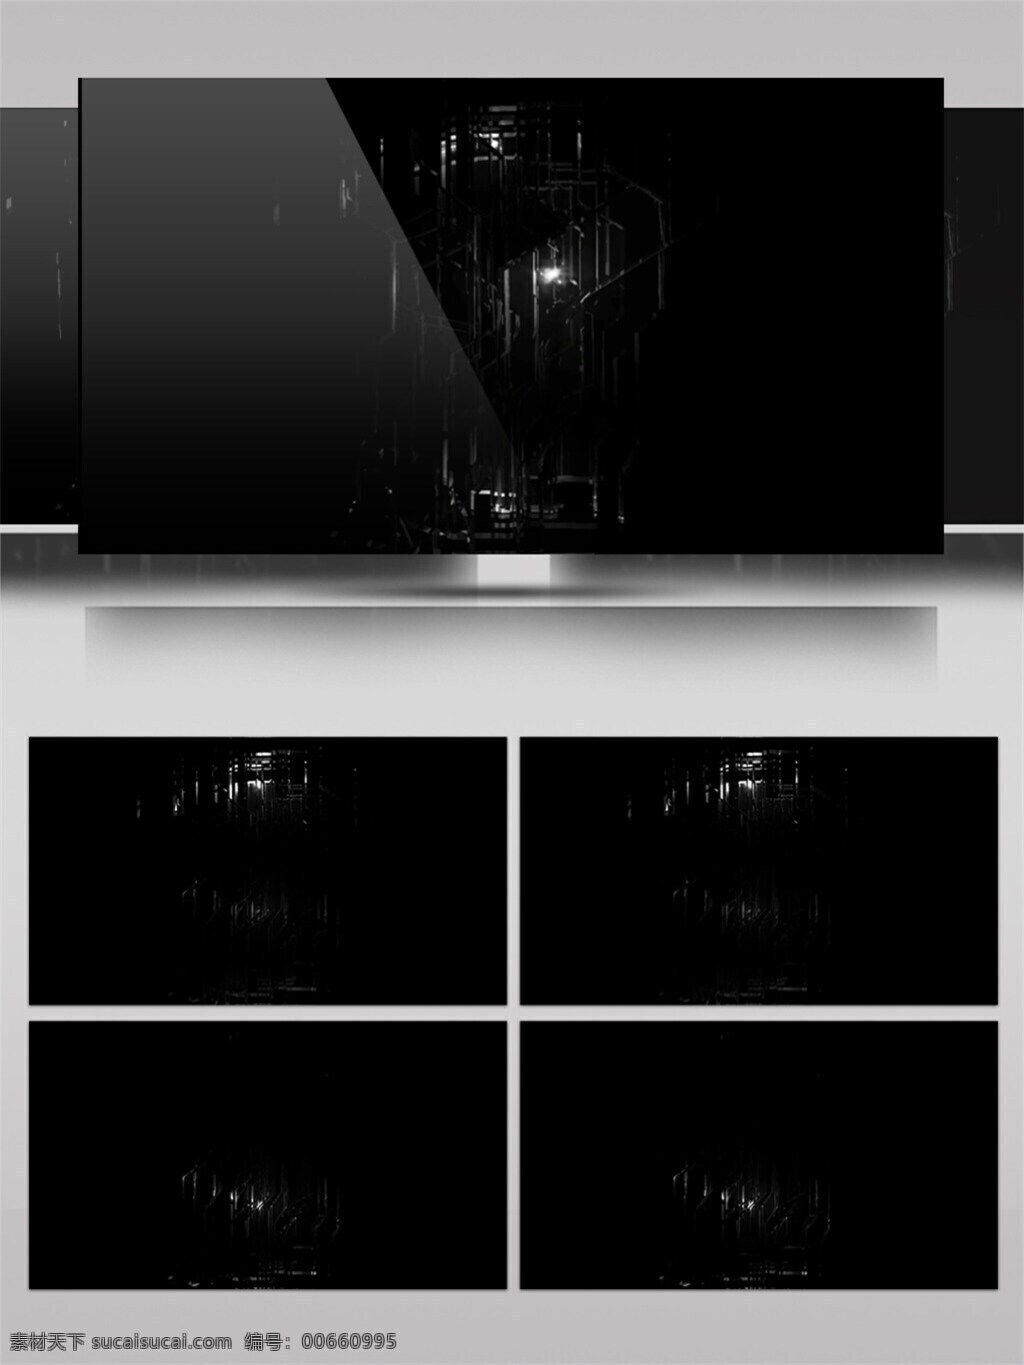 黑夜 建筑 高清 视频 诡异黑暗 优雅低奢 创意设计 简约风格 黑光建筑 低雅大气